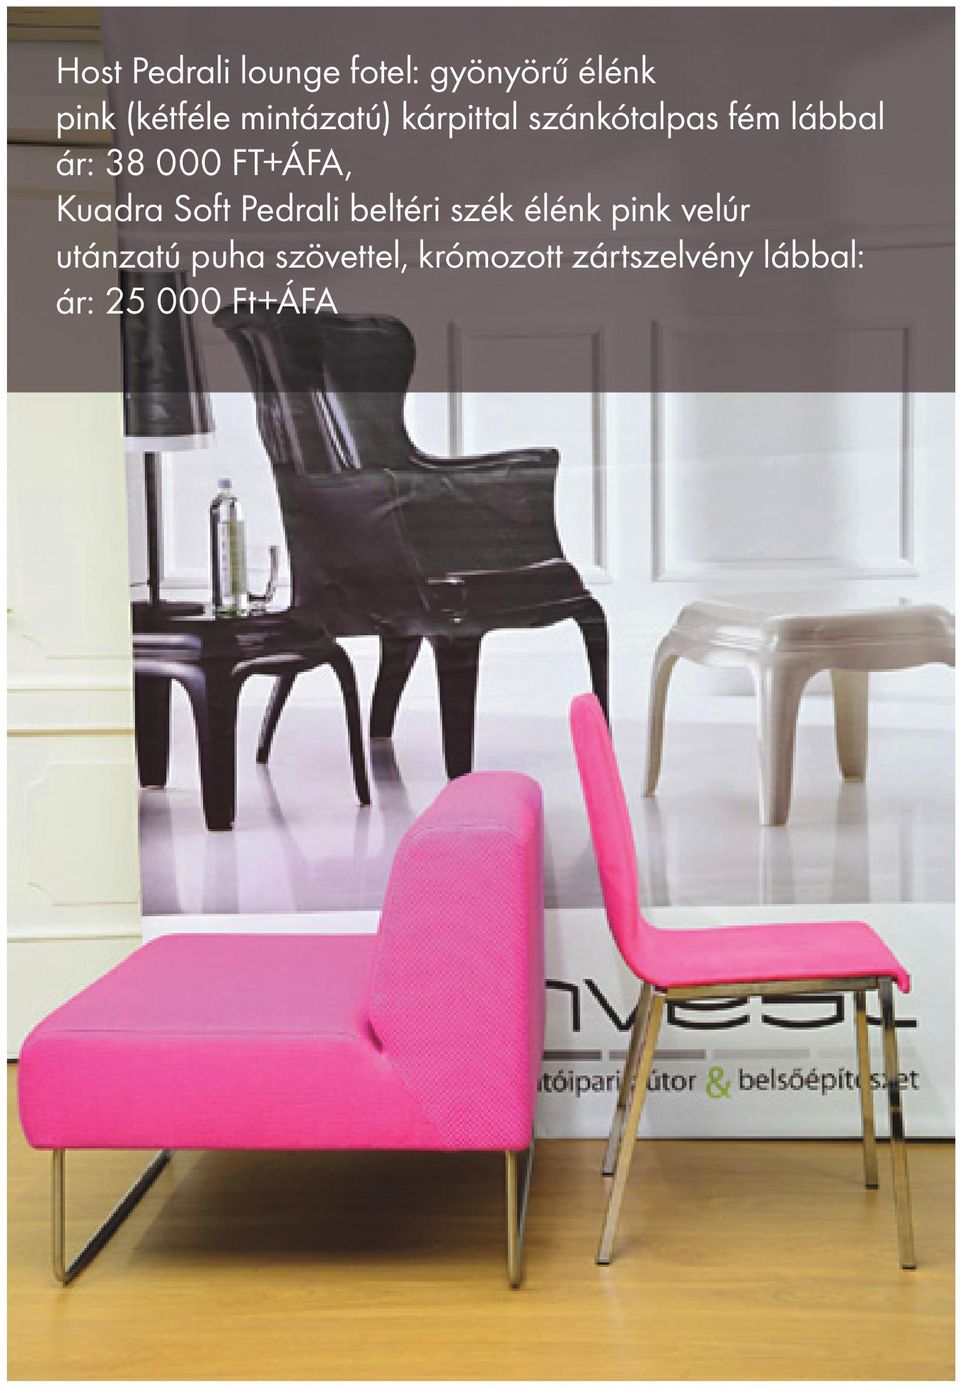 FT+ÁFA, Kuadra Soft Pedrali beltéri szék élénk pink velúr